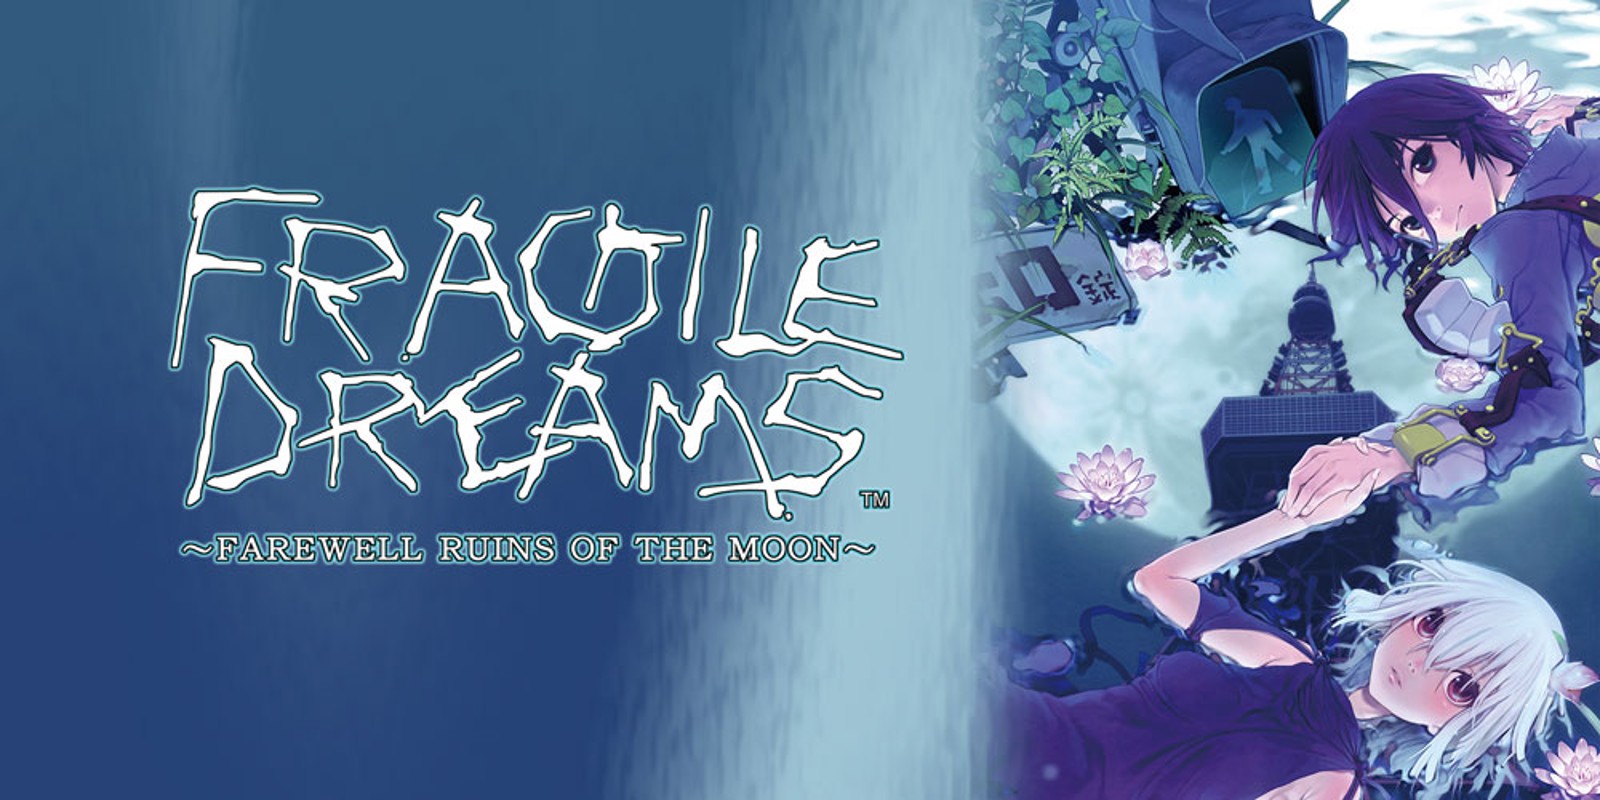 Fragile-Dreams-Farewell-Ruins-of-the-Moon